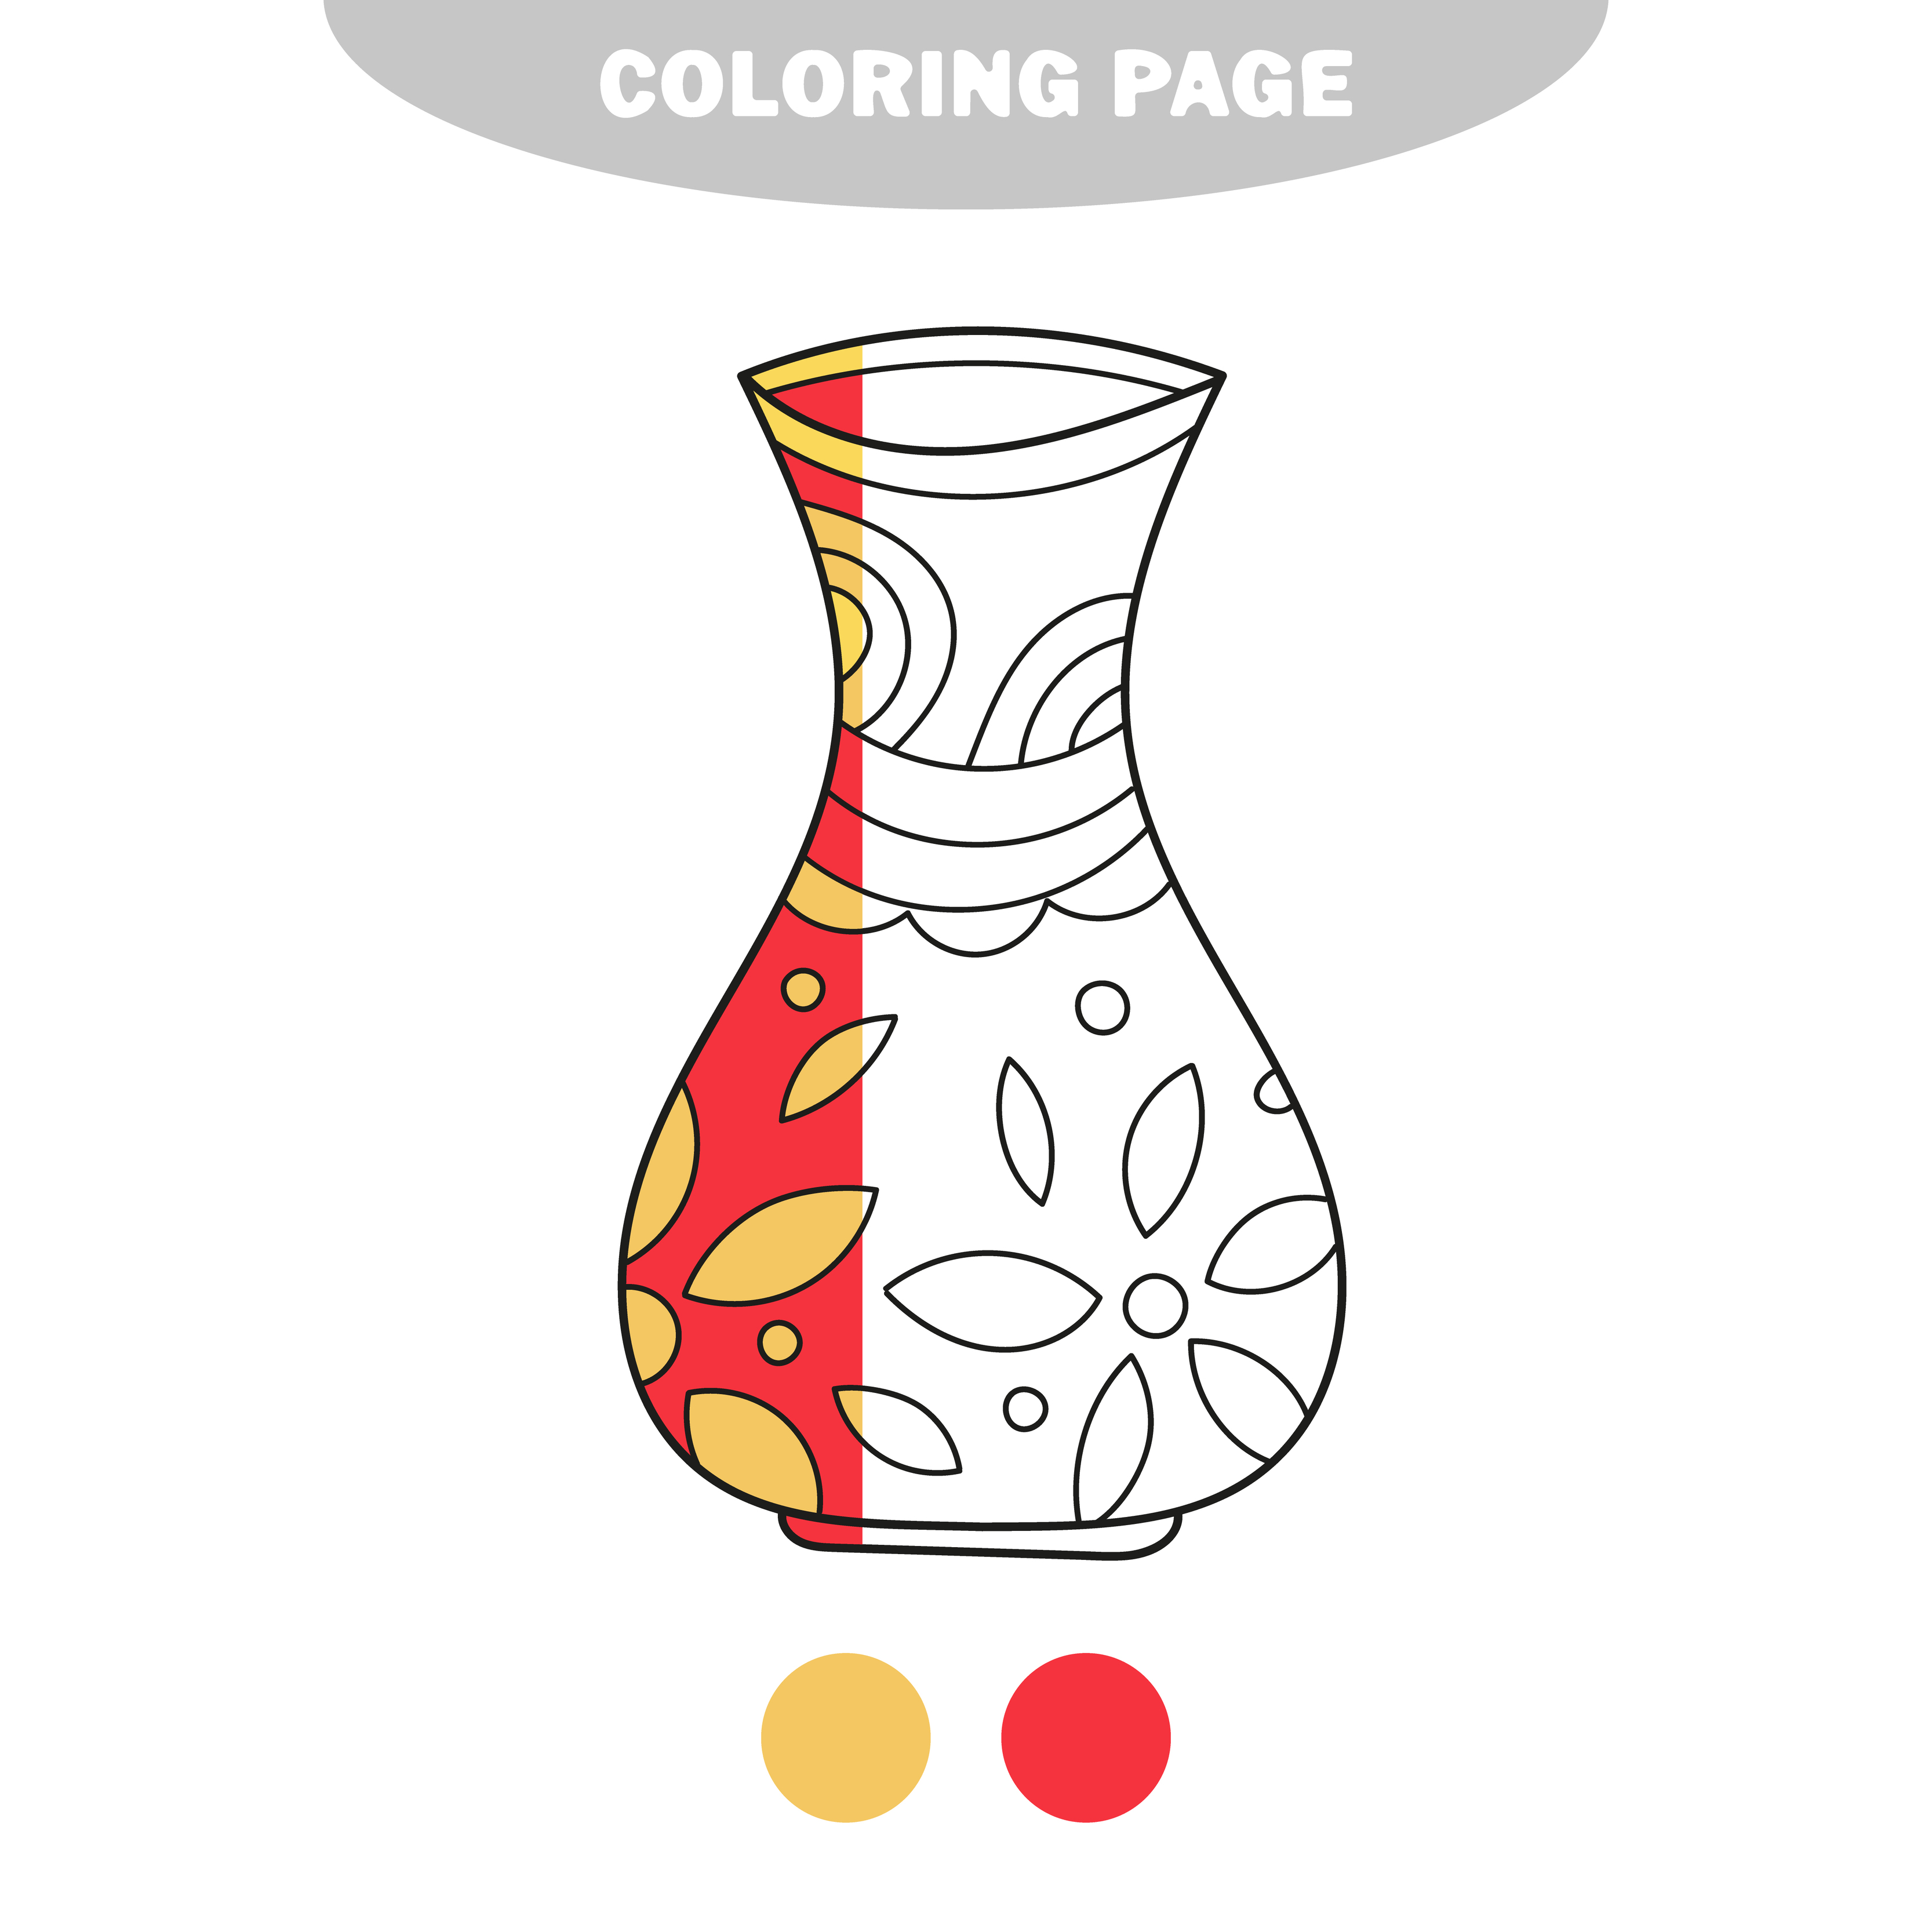 Coloriage Simple Page A Colorier Un Vase De Vecteur Avec Decoration Telecharger Vectoriel Gratuit Clipart Graphique Vecteur Dessins Et Pictogramme Gratuit